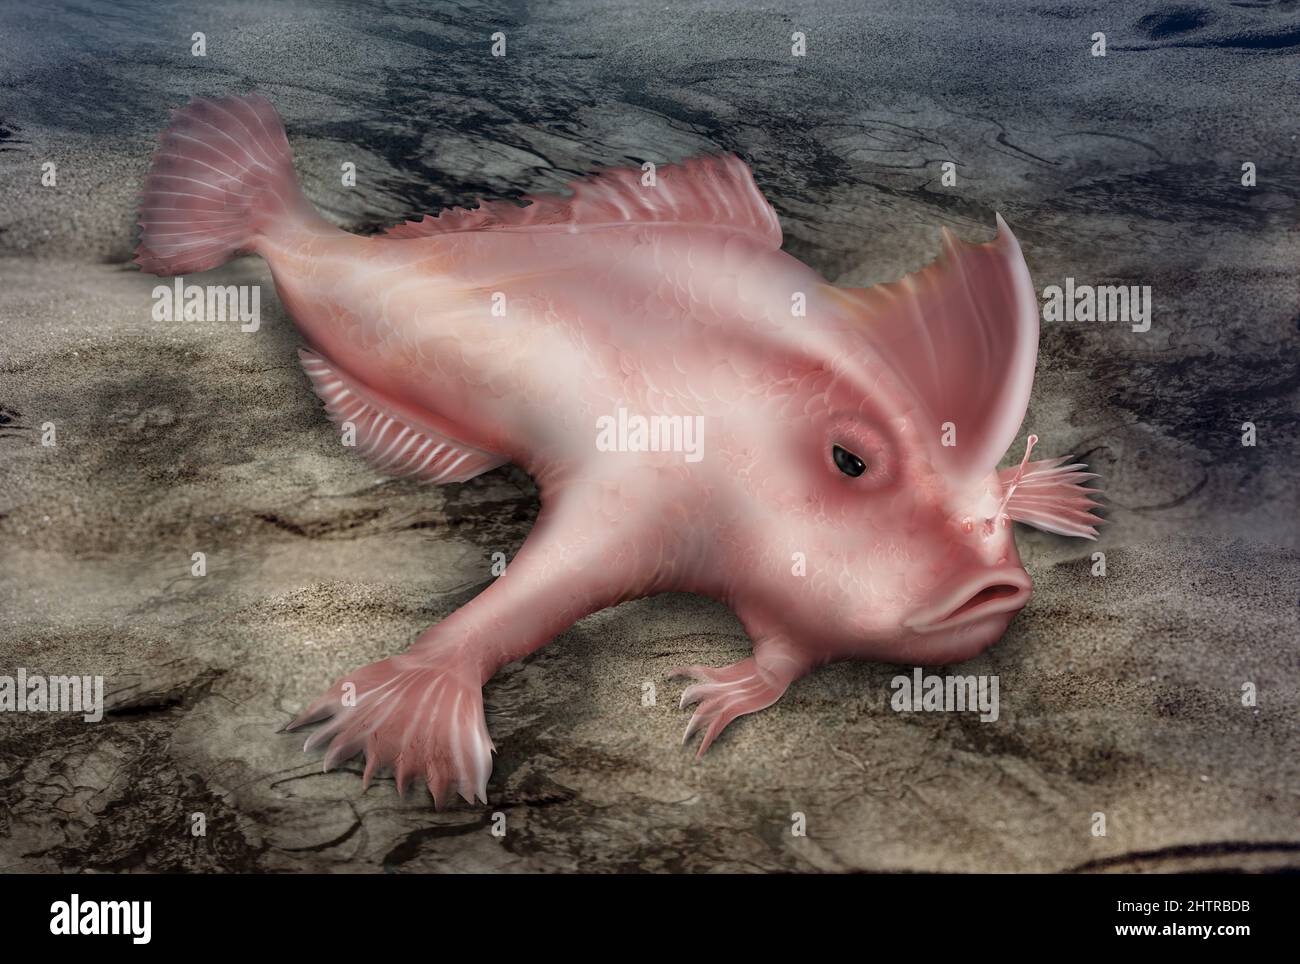 Pesce rosa immagini e fotografie stock ad alta risoluzione - Alamy